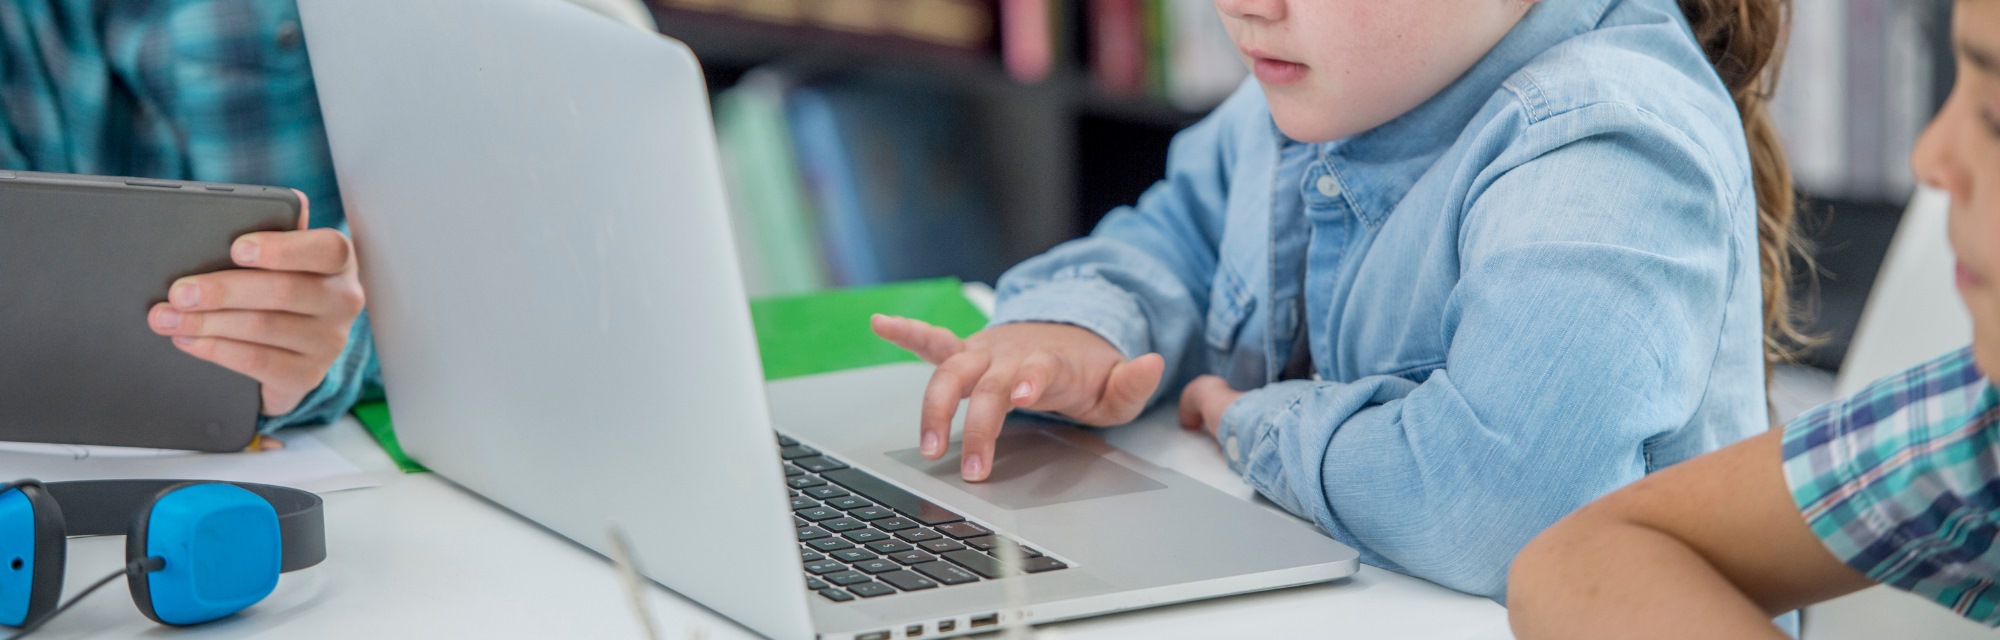 Imagen de portada de curso "Un desafío a la creatividad con tecnologías digitales: Pensamiento computacional y programación en el Nivel Primario" - Se visualiza un Nene de Nivel Primario manejando una notebook.